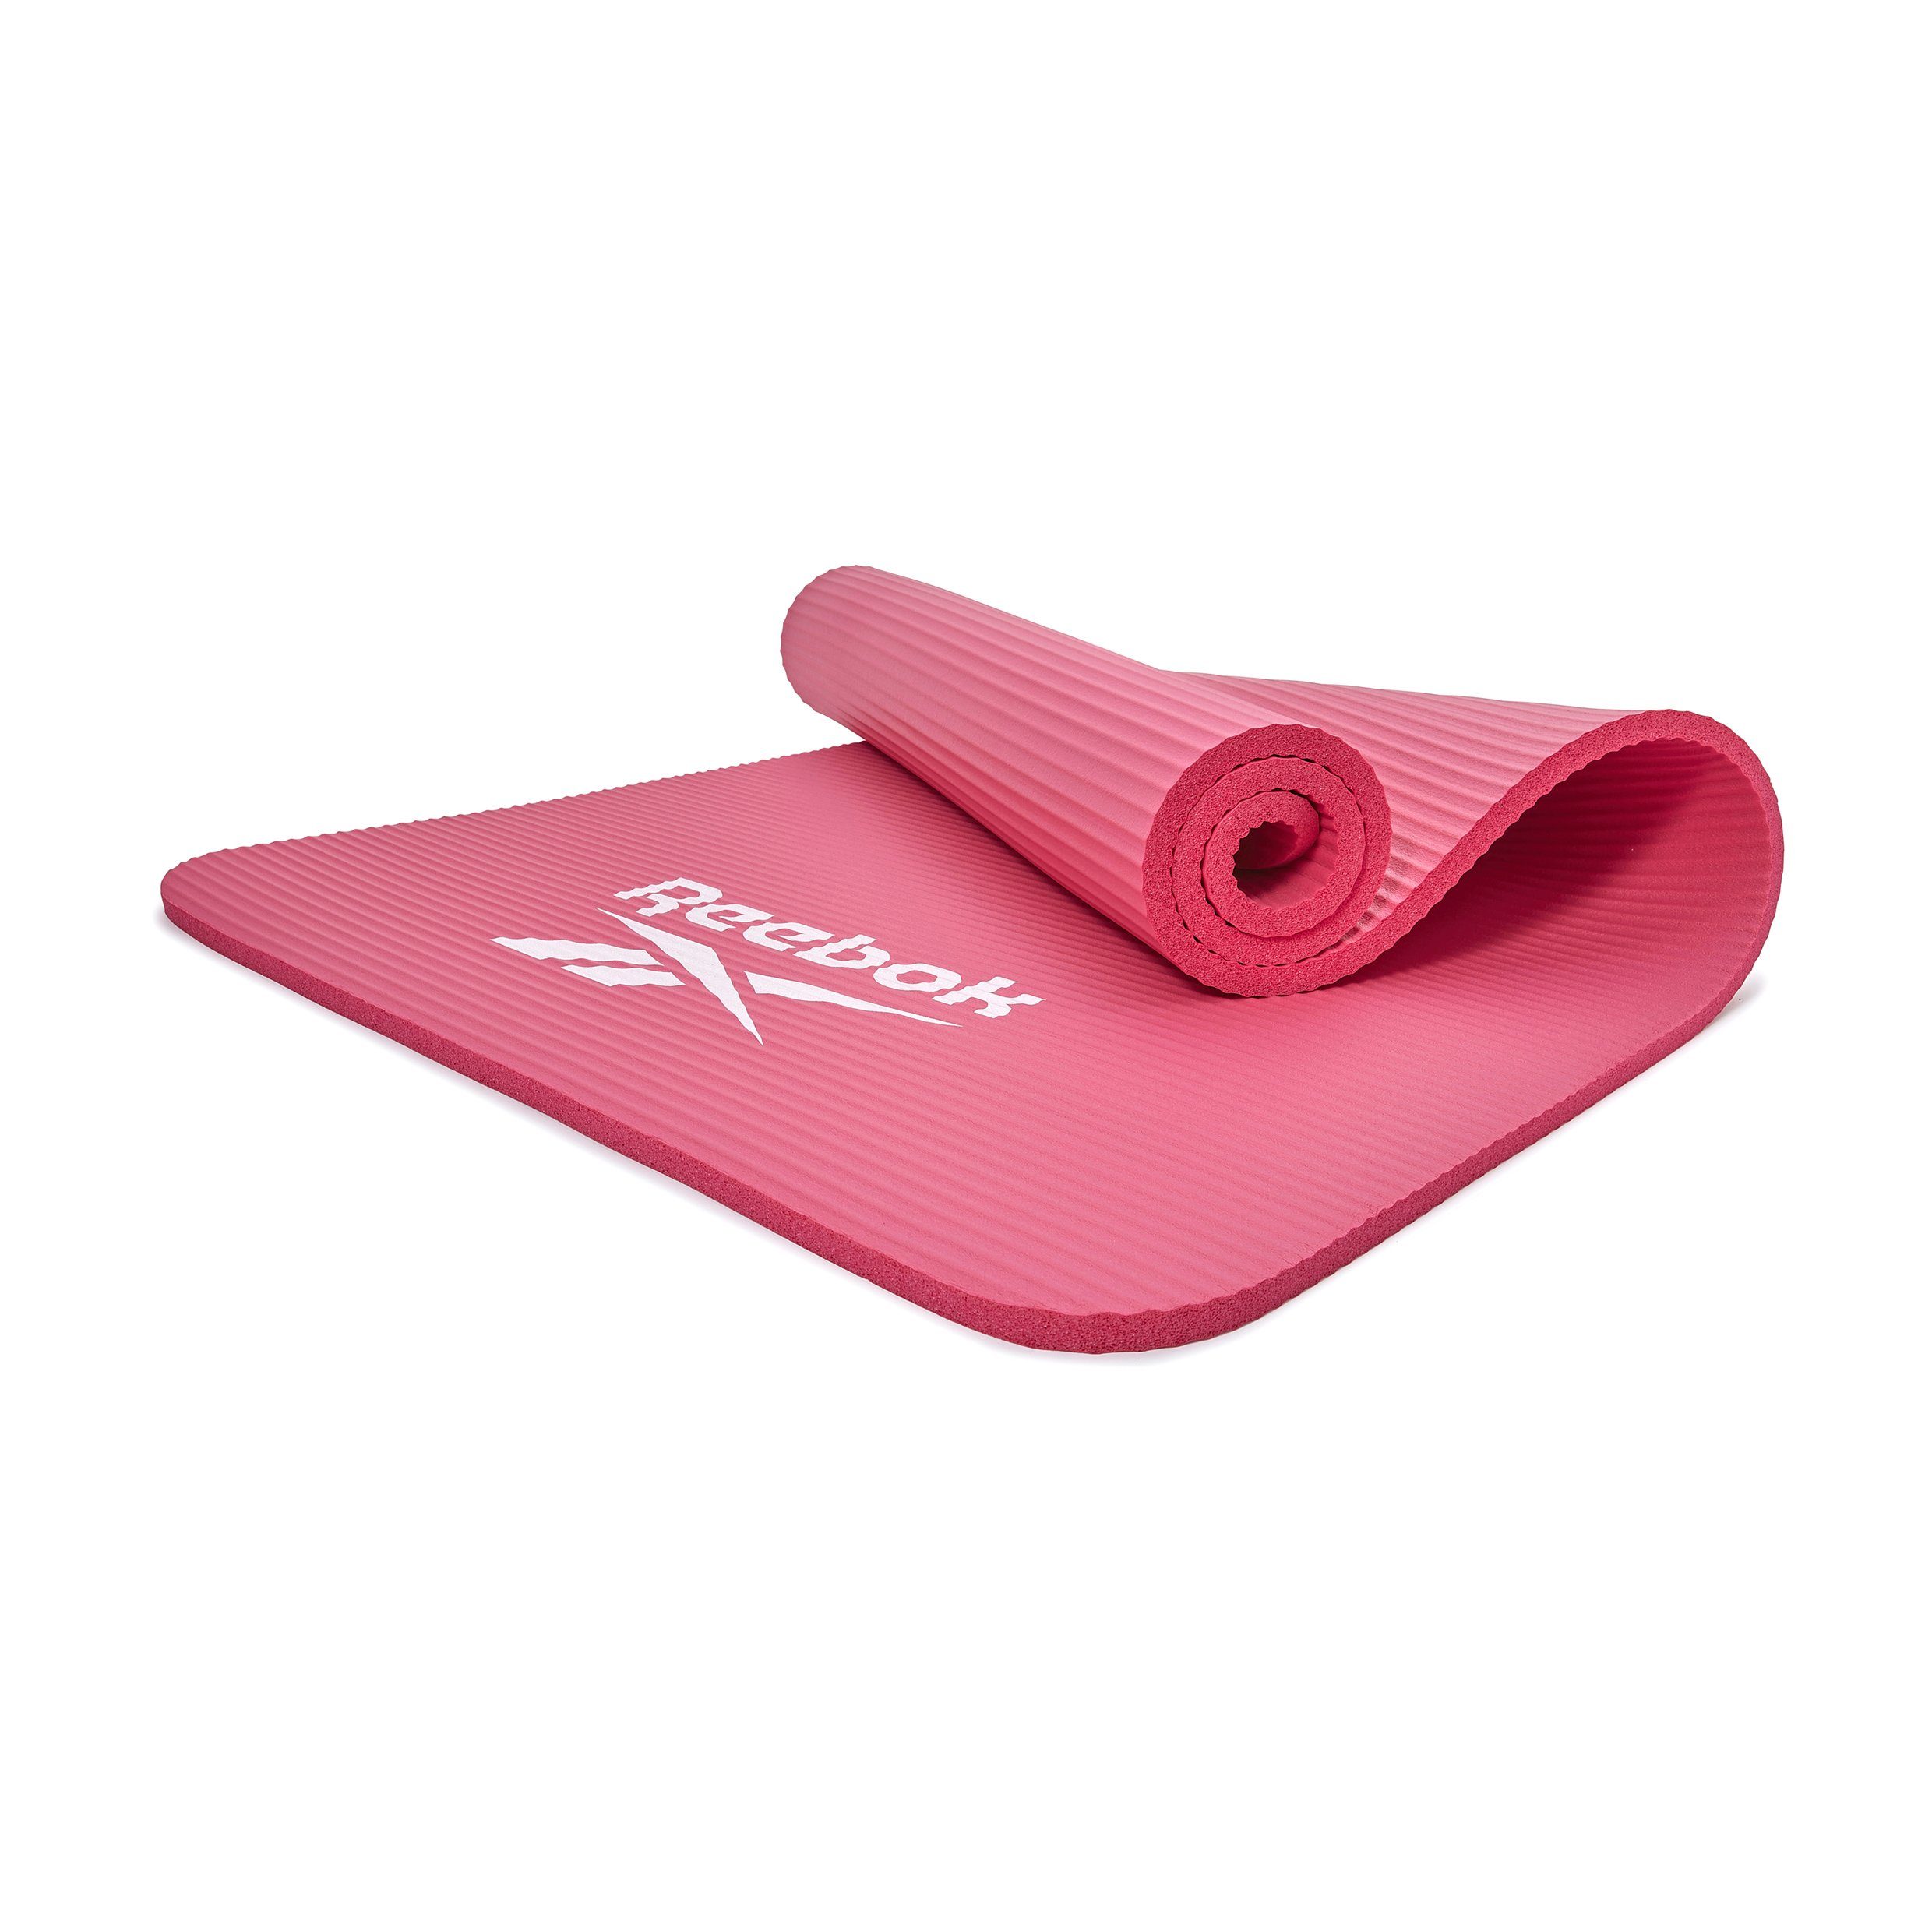 Reebok Fitnessmatte Reebok Fitness-/Trainingsmatte, 15mm, Rutschfeste Oberfläche pink | Sportmatten